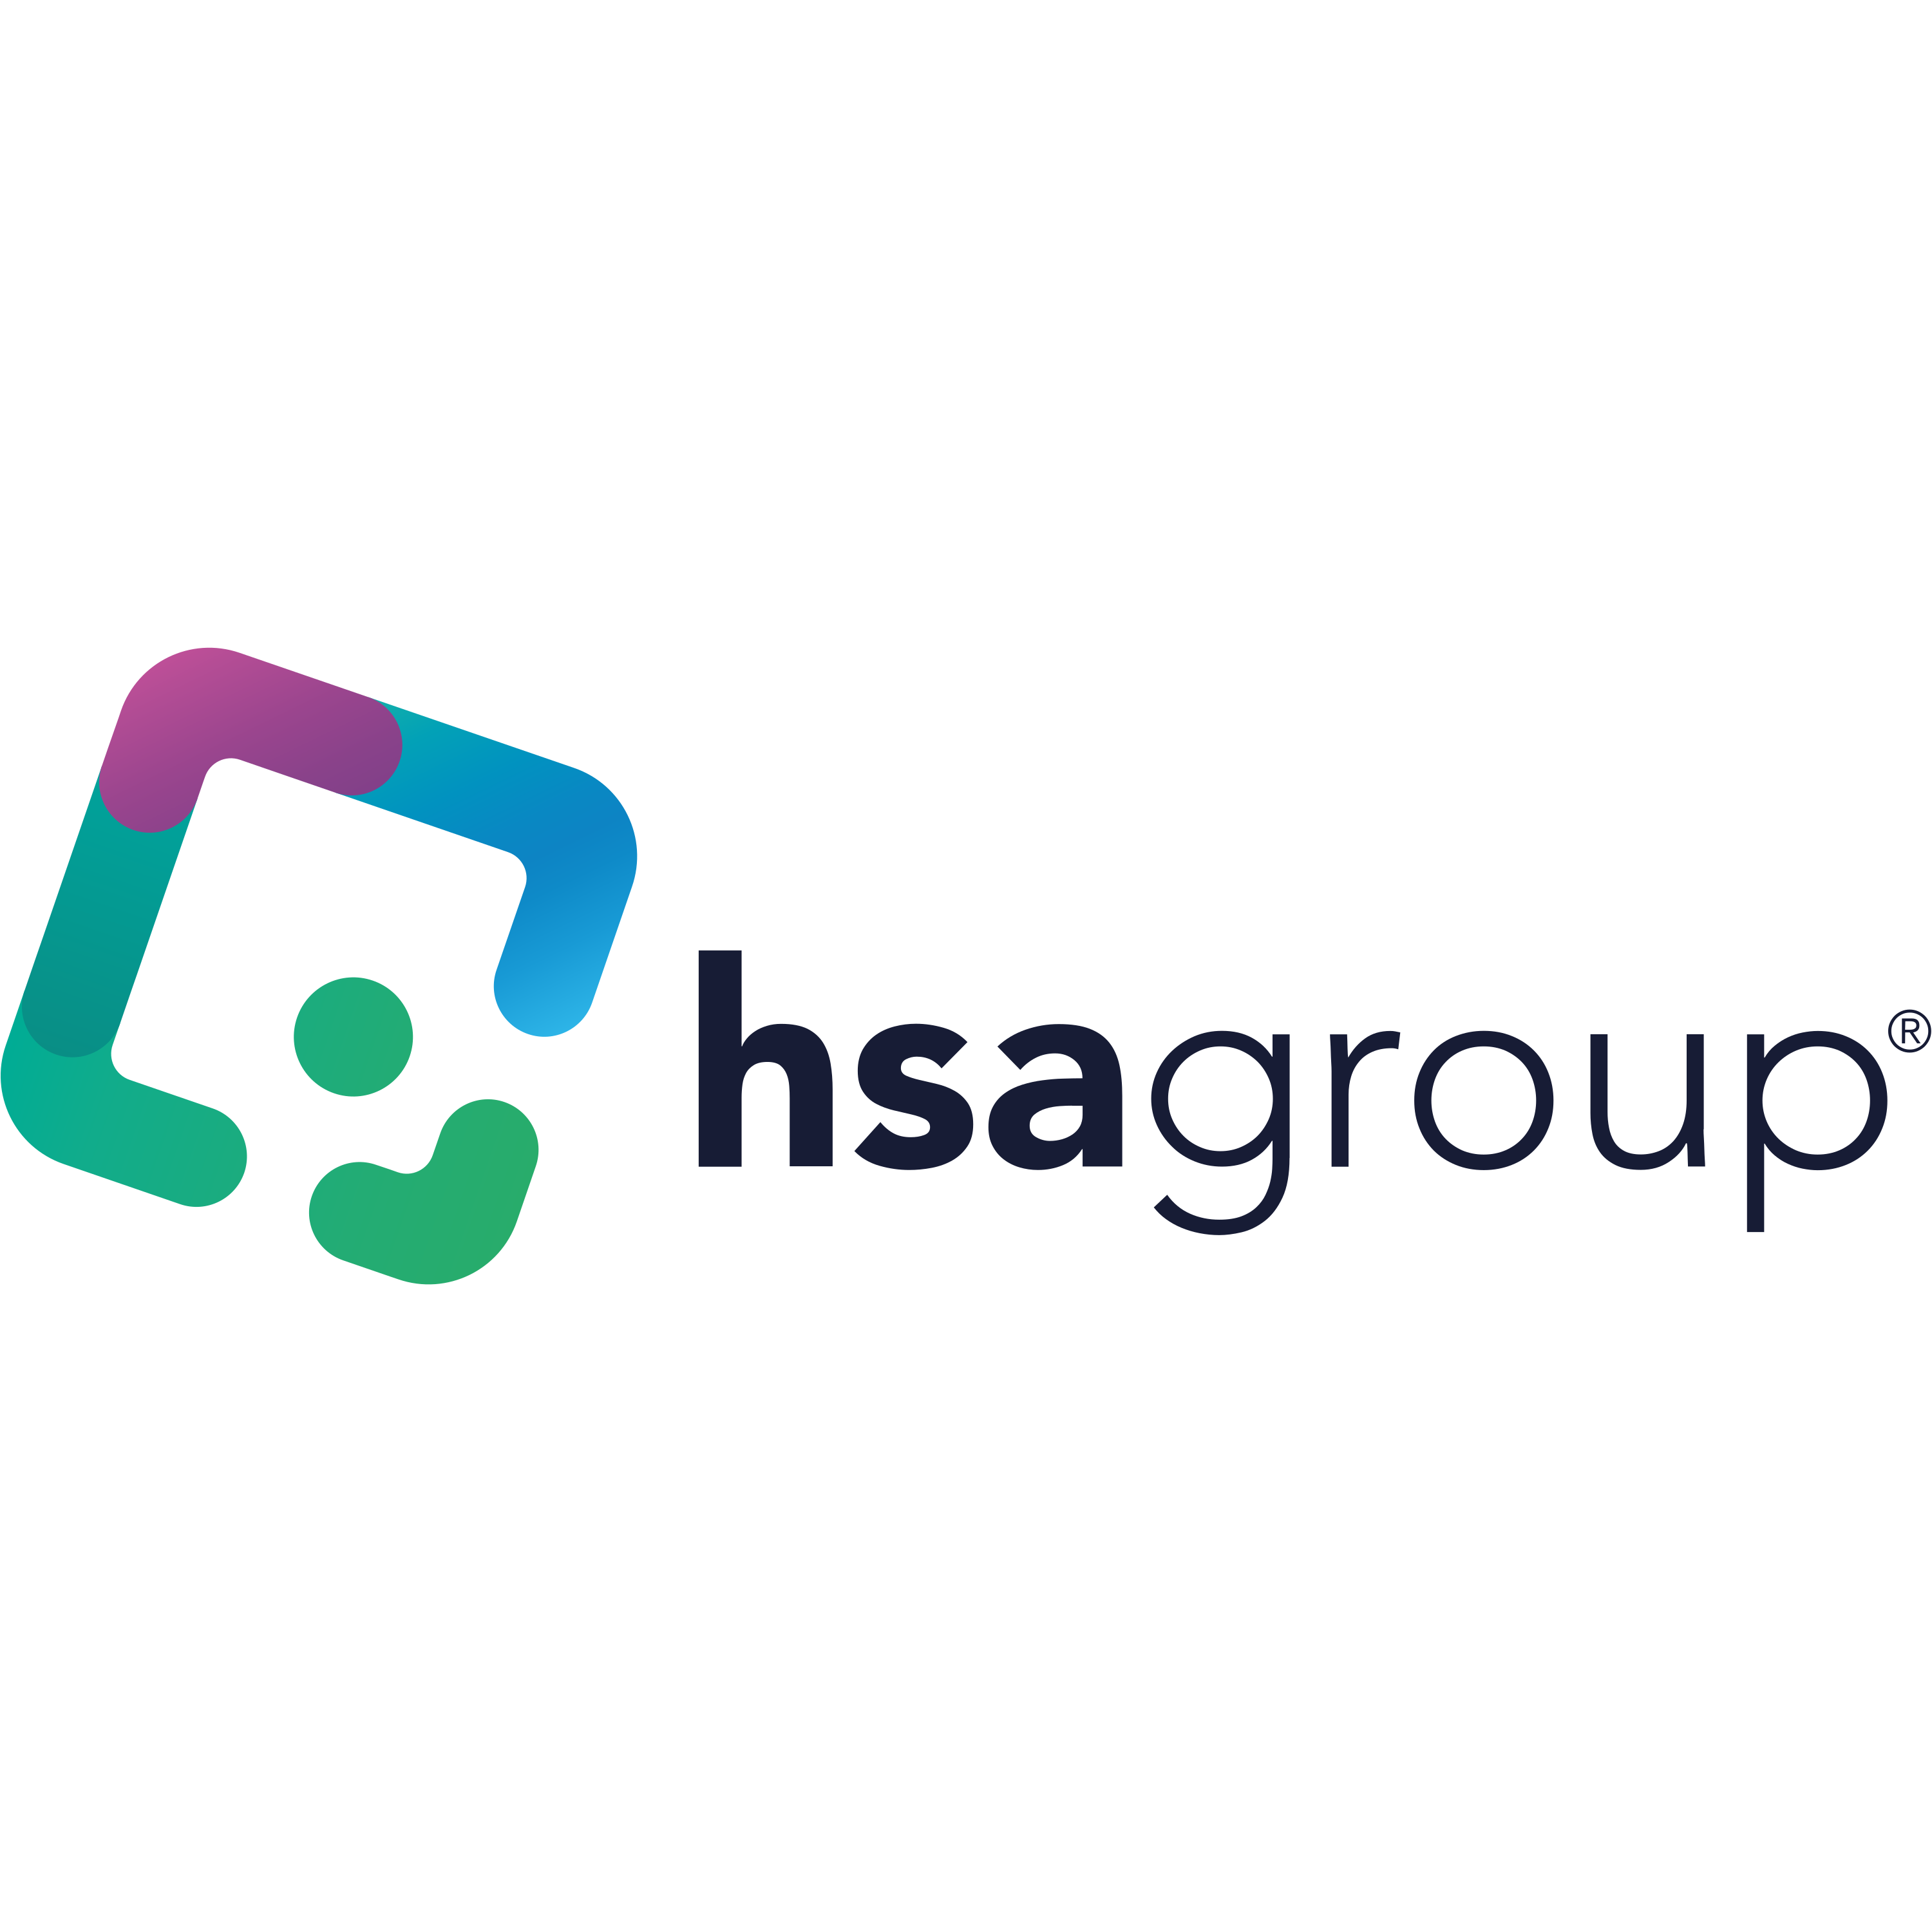 HSA Group Logo  Transparent Image